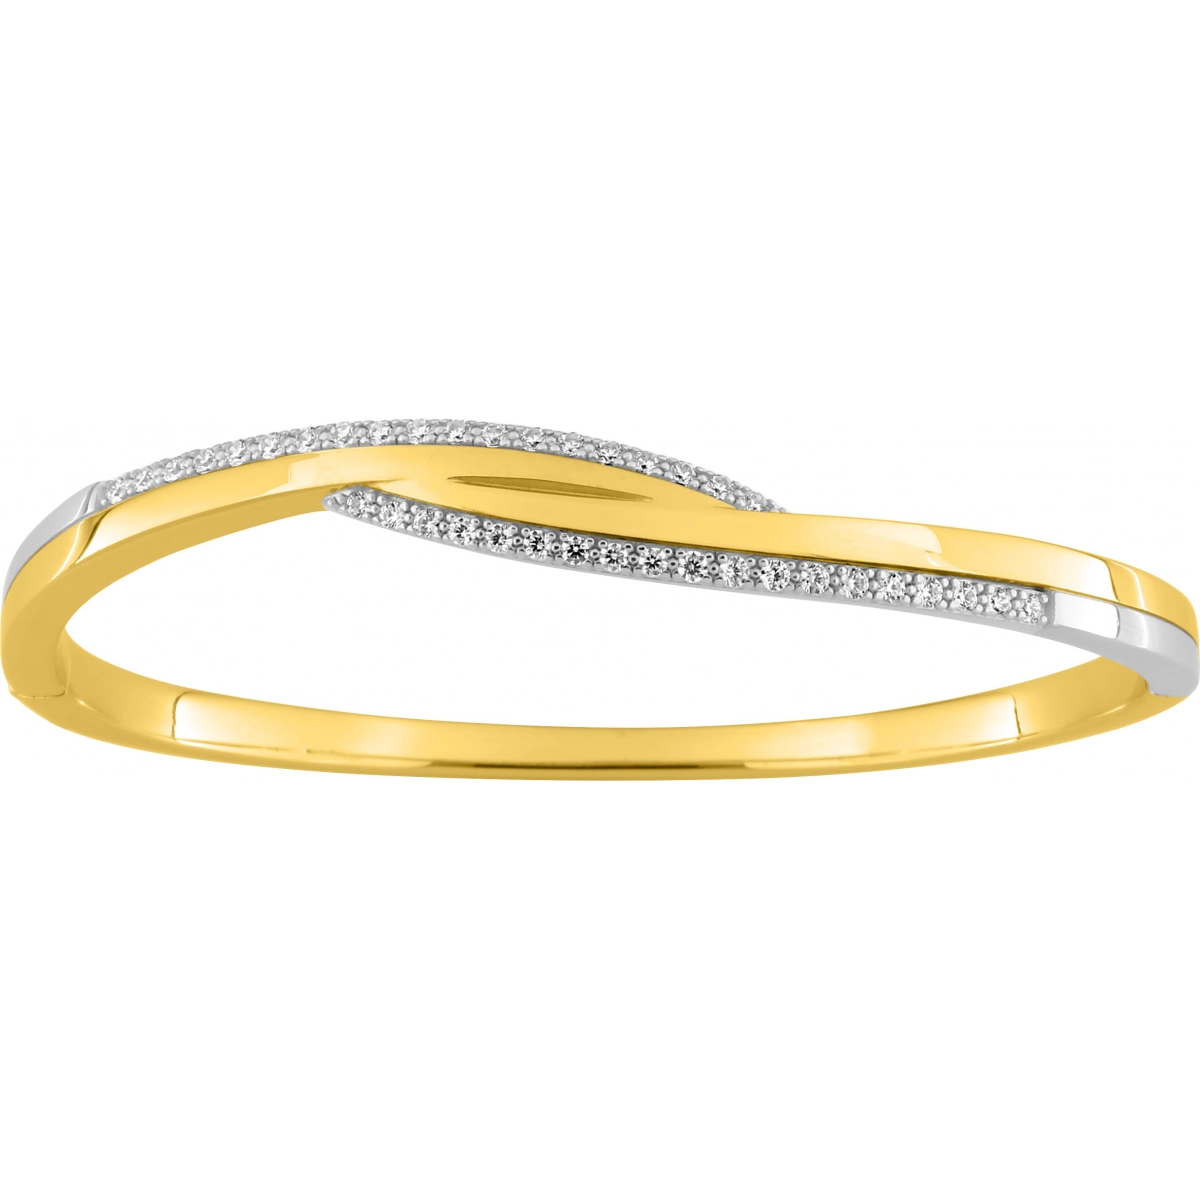 Bracelet w. cz gold plated Brass Lua Blanca  256965.9 